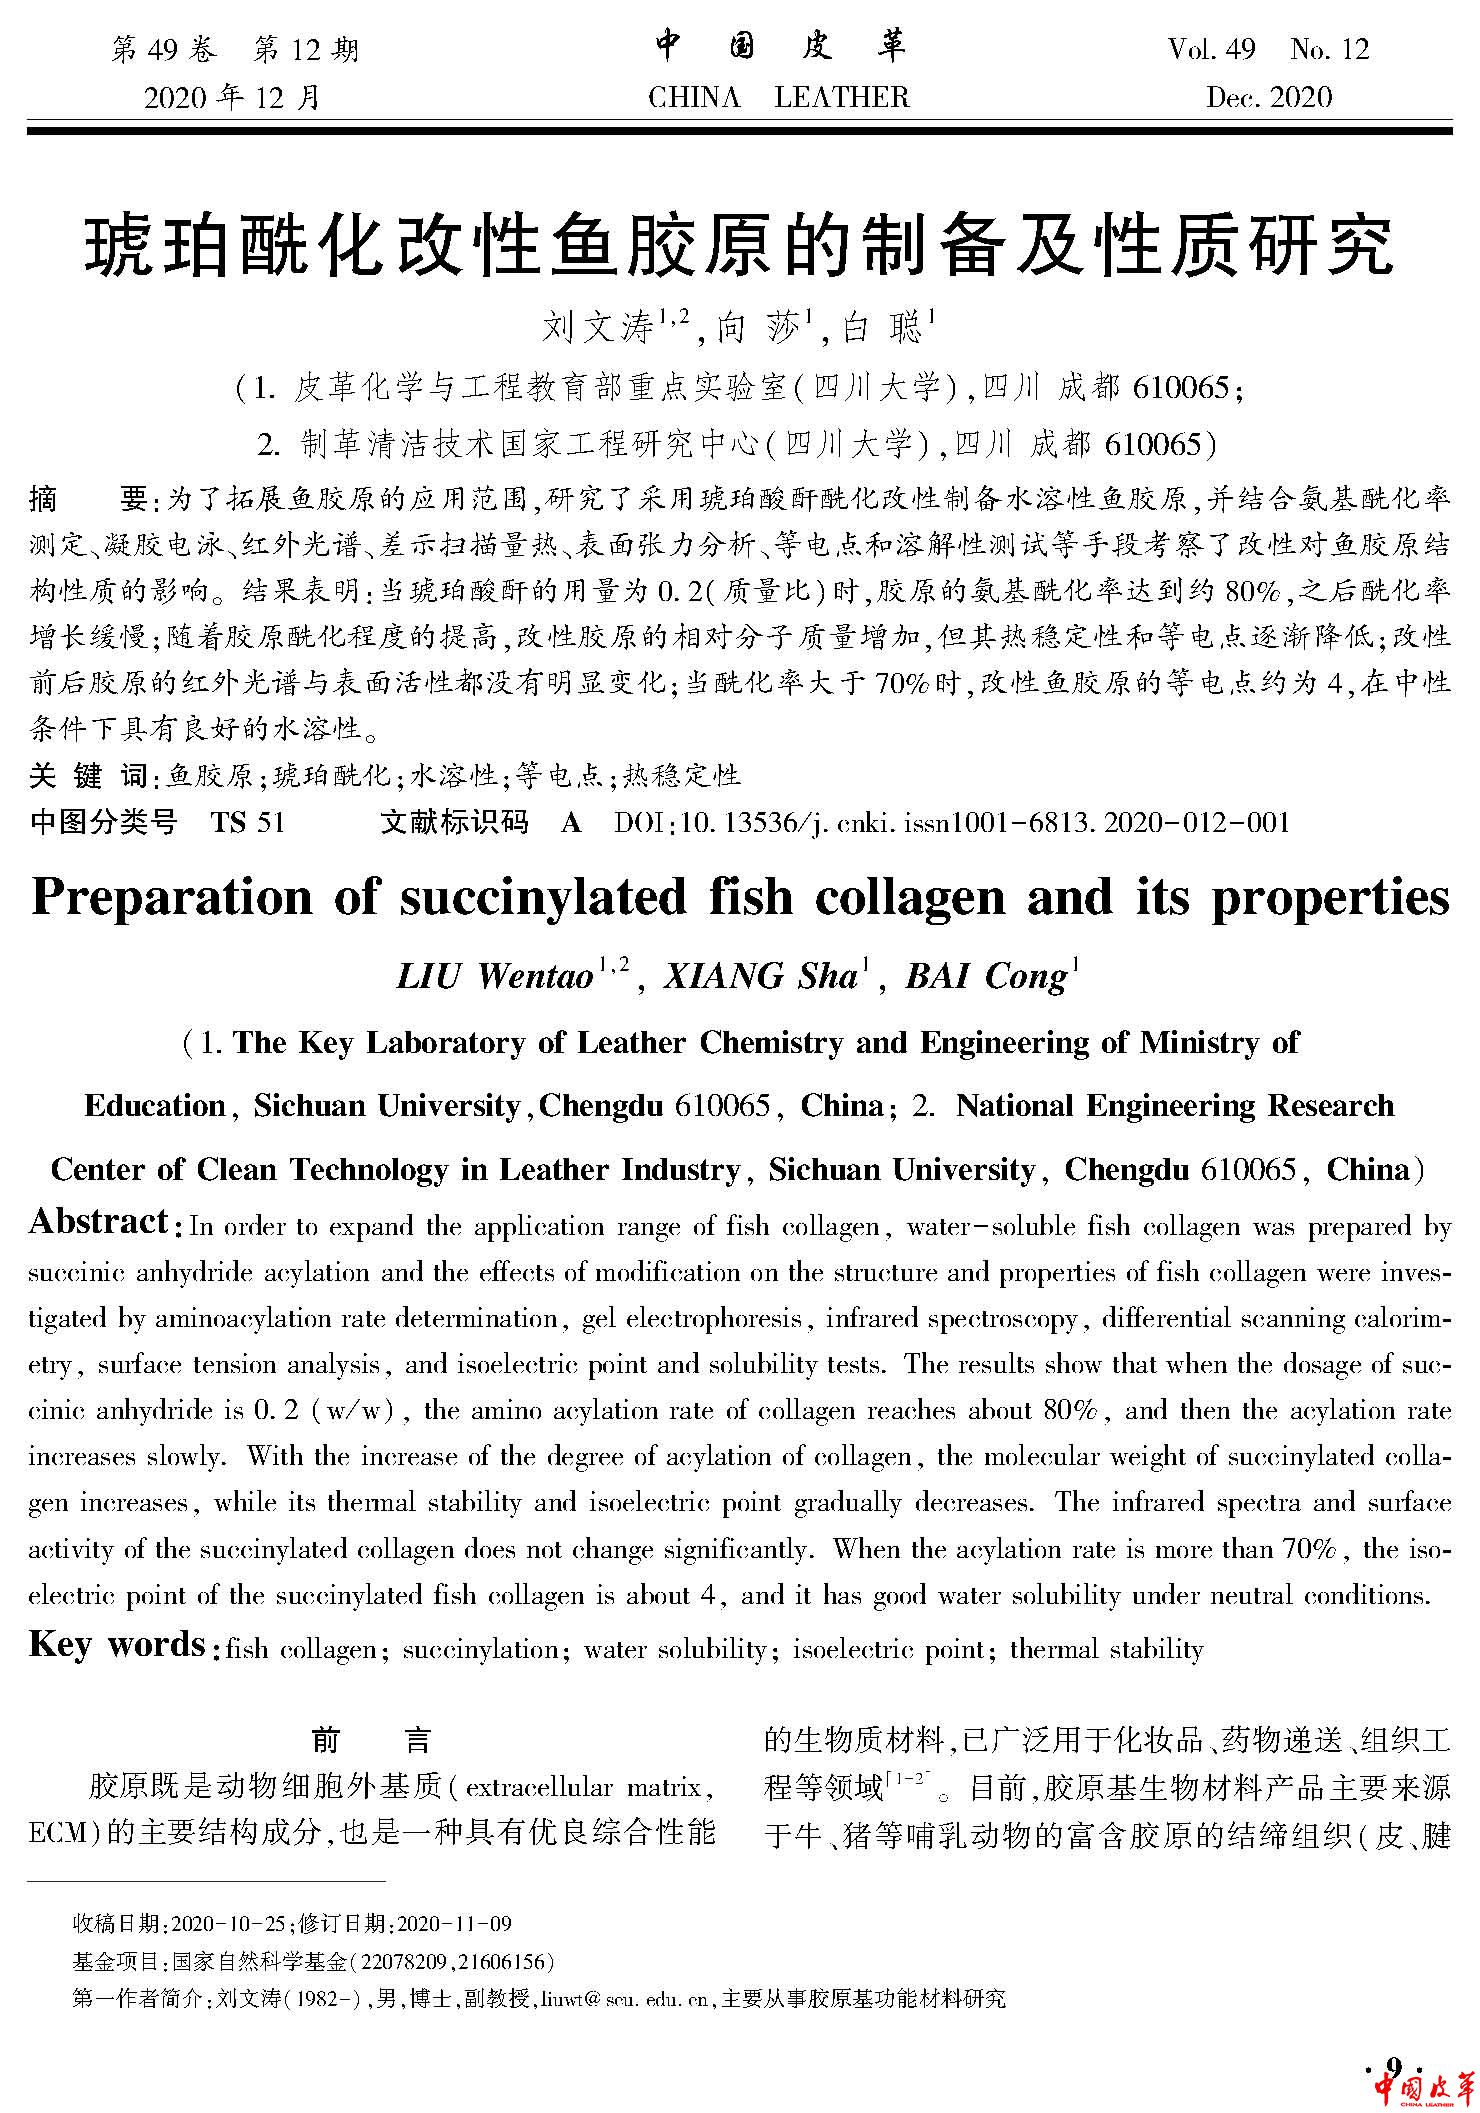 页面提取自－琥珀酰化改性鱼胶原的制备及性质研究.jpg